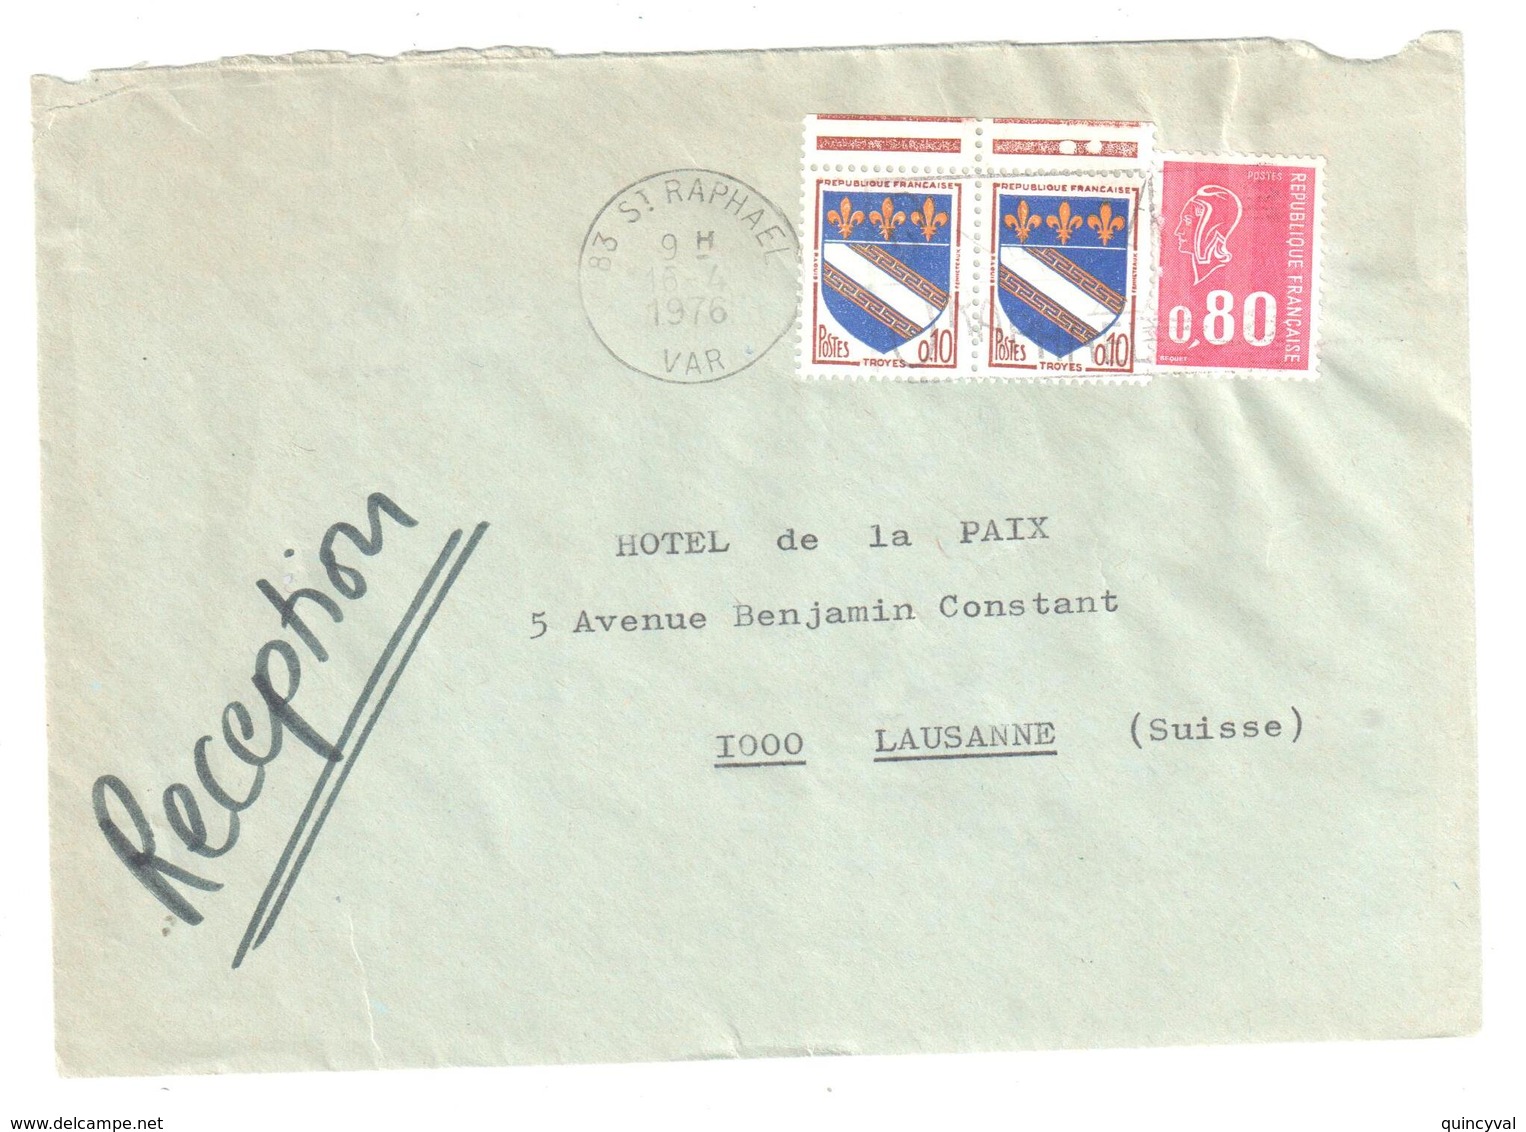 St RAPHAEL Var Lettre Destination Suisse Tarif Particulier Du 1 1 1976 80C Bequet 10c Troyes Yv 1353 1816 Dest Lausanne - Storia Postale